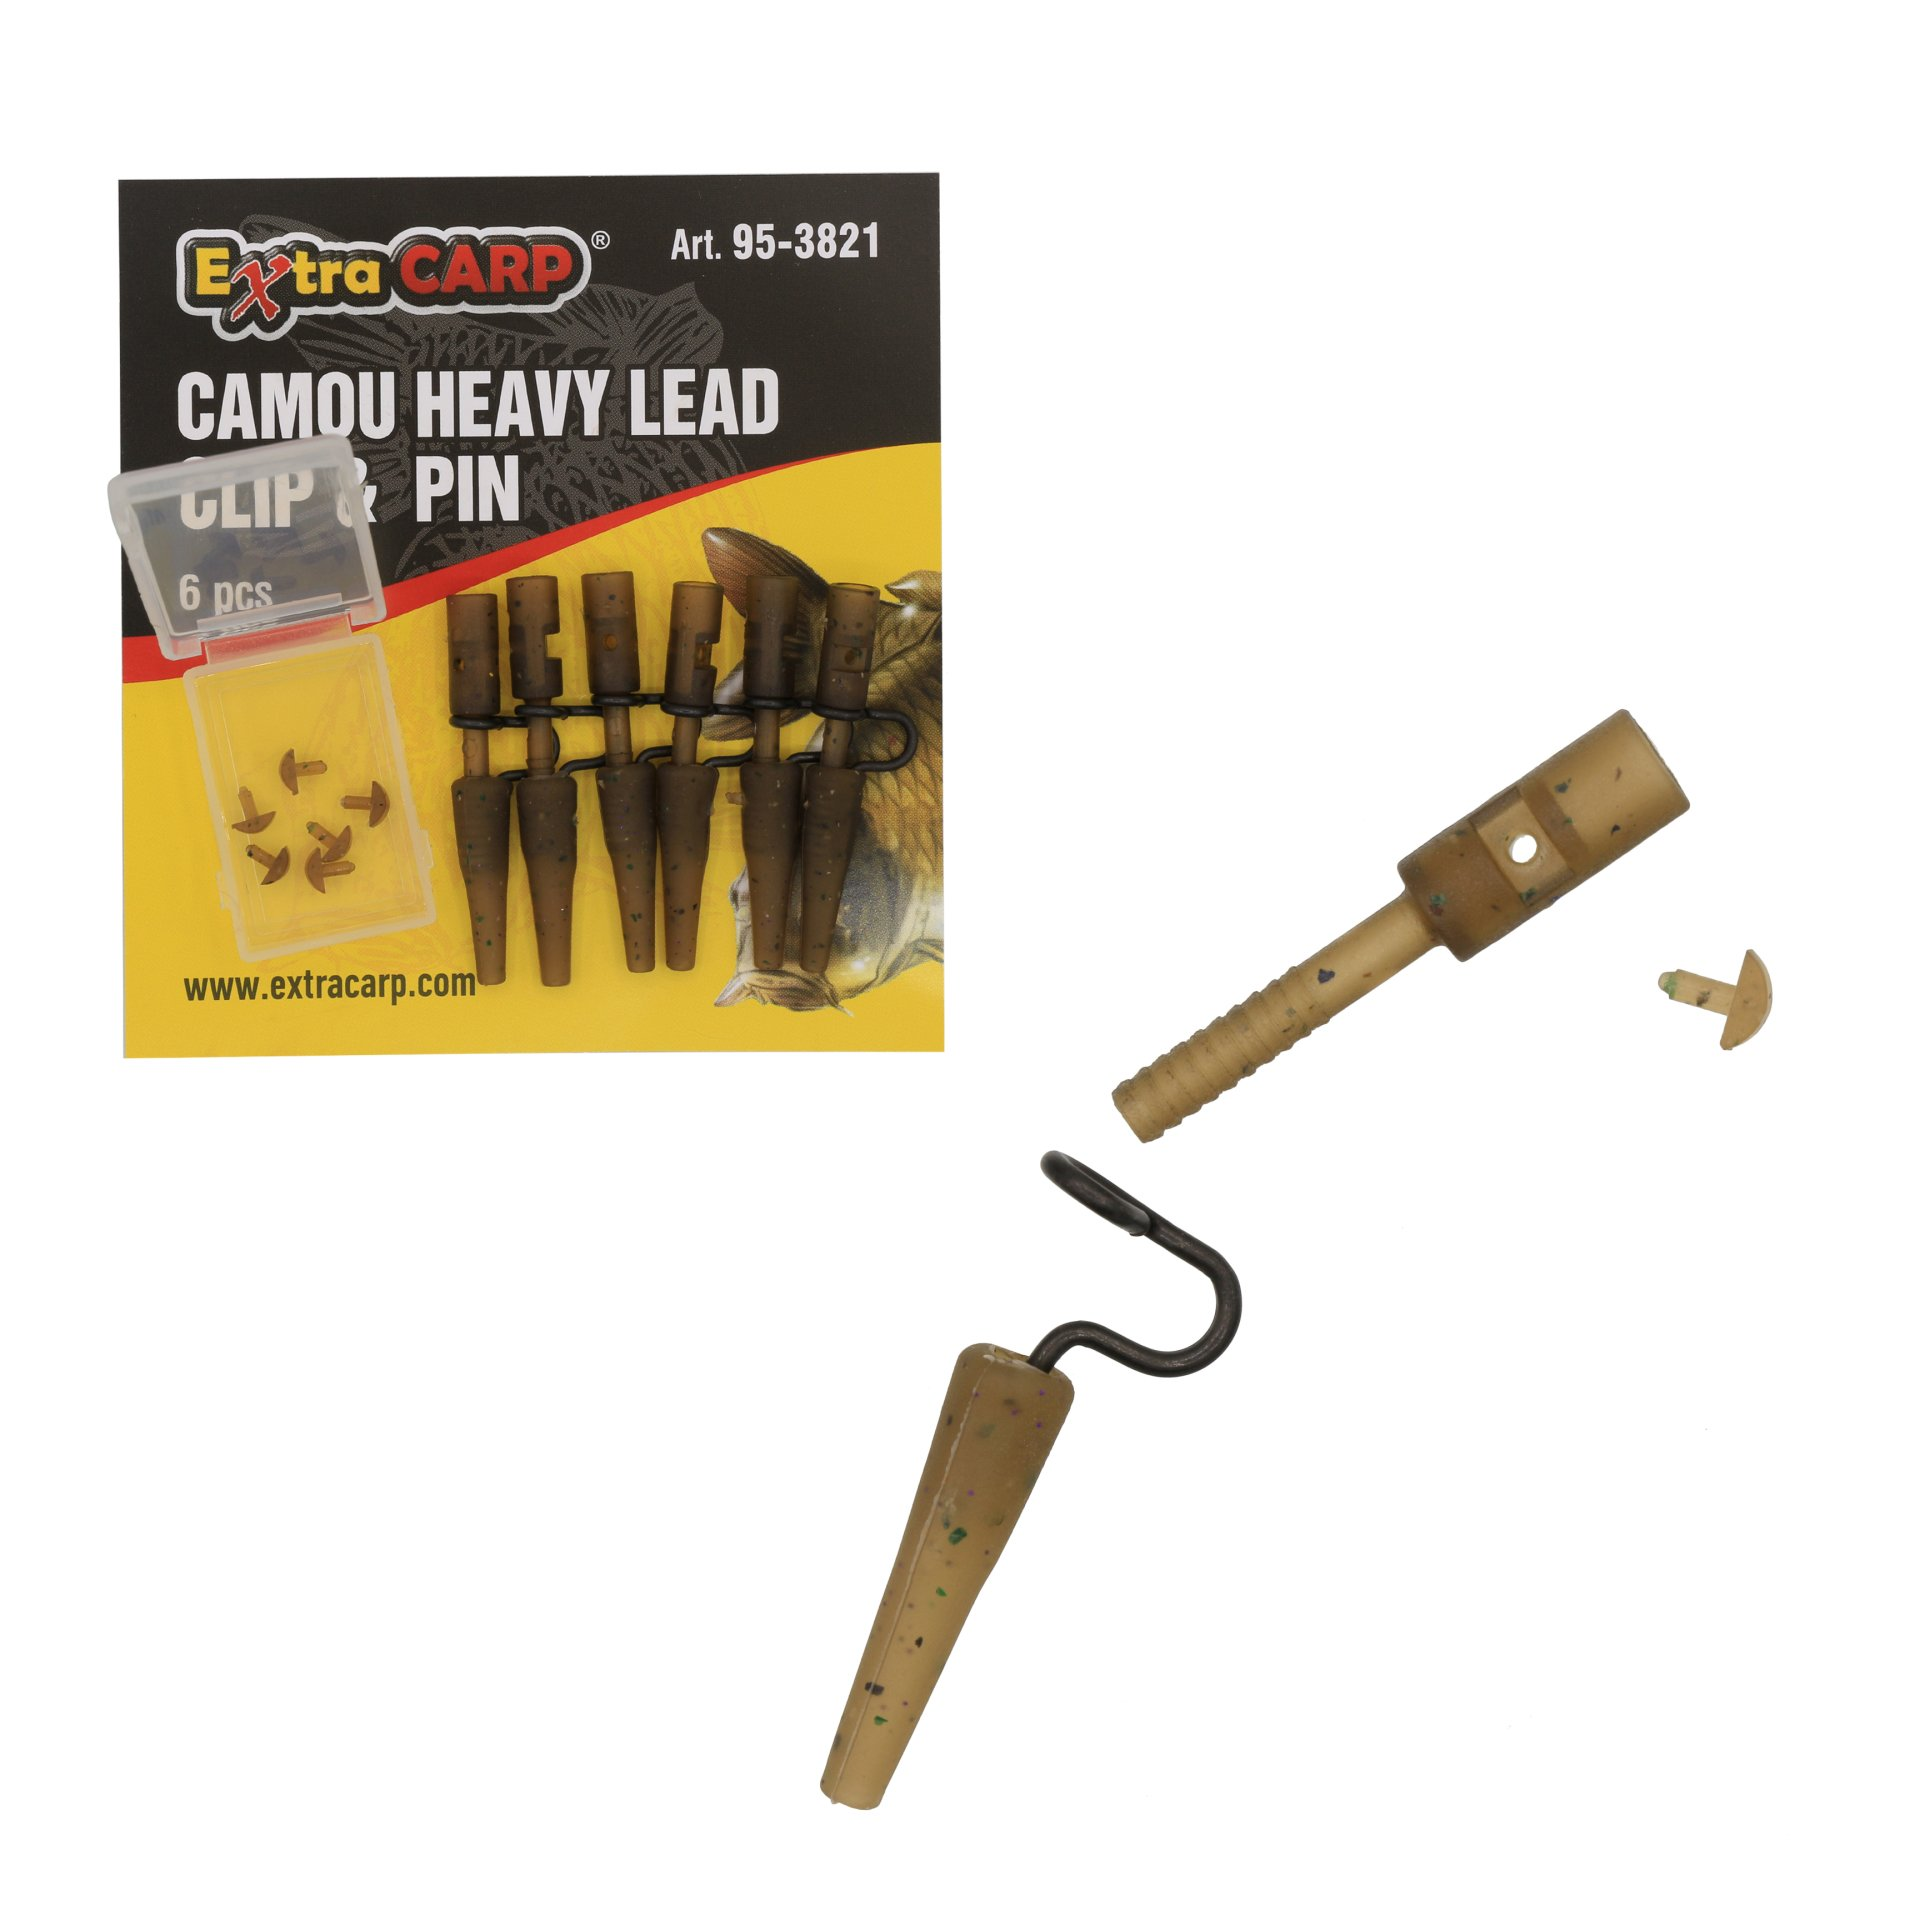 Extra Carp Camou Heavy Lead Clip & Pin 6pcs